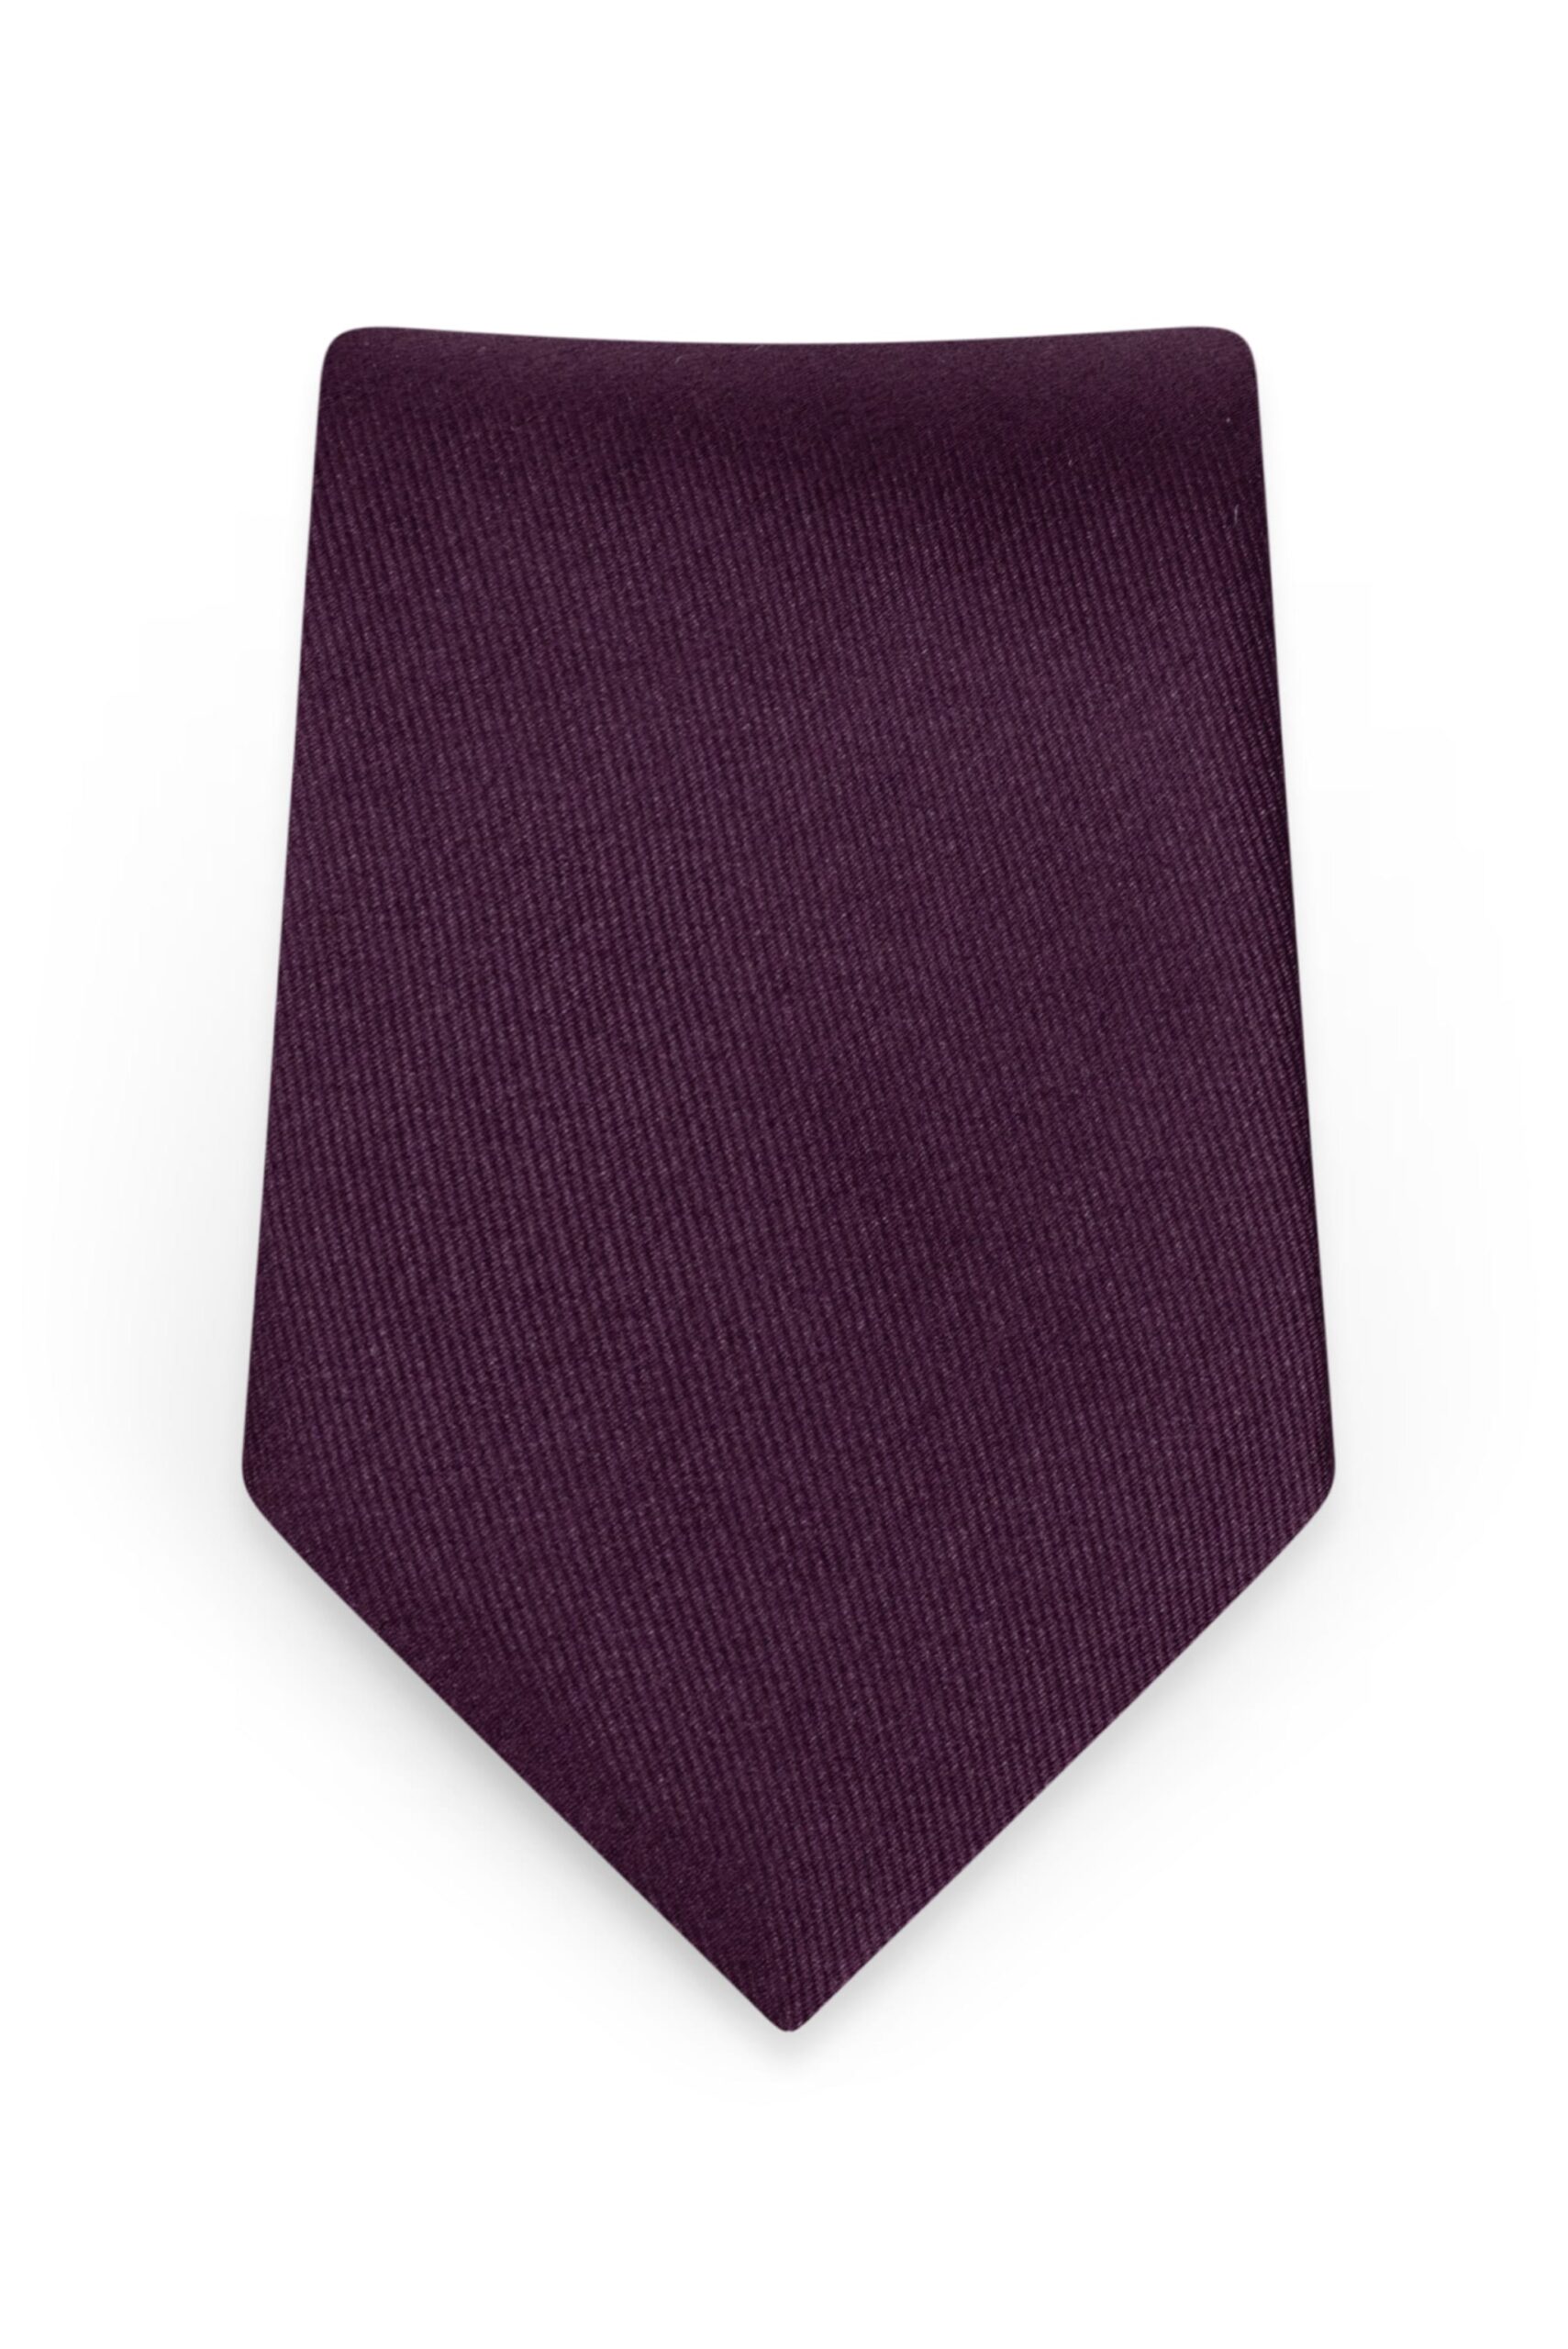 Solid Plum Self-Tie Windsor Tie